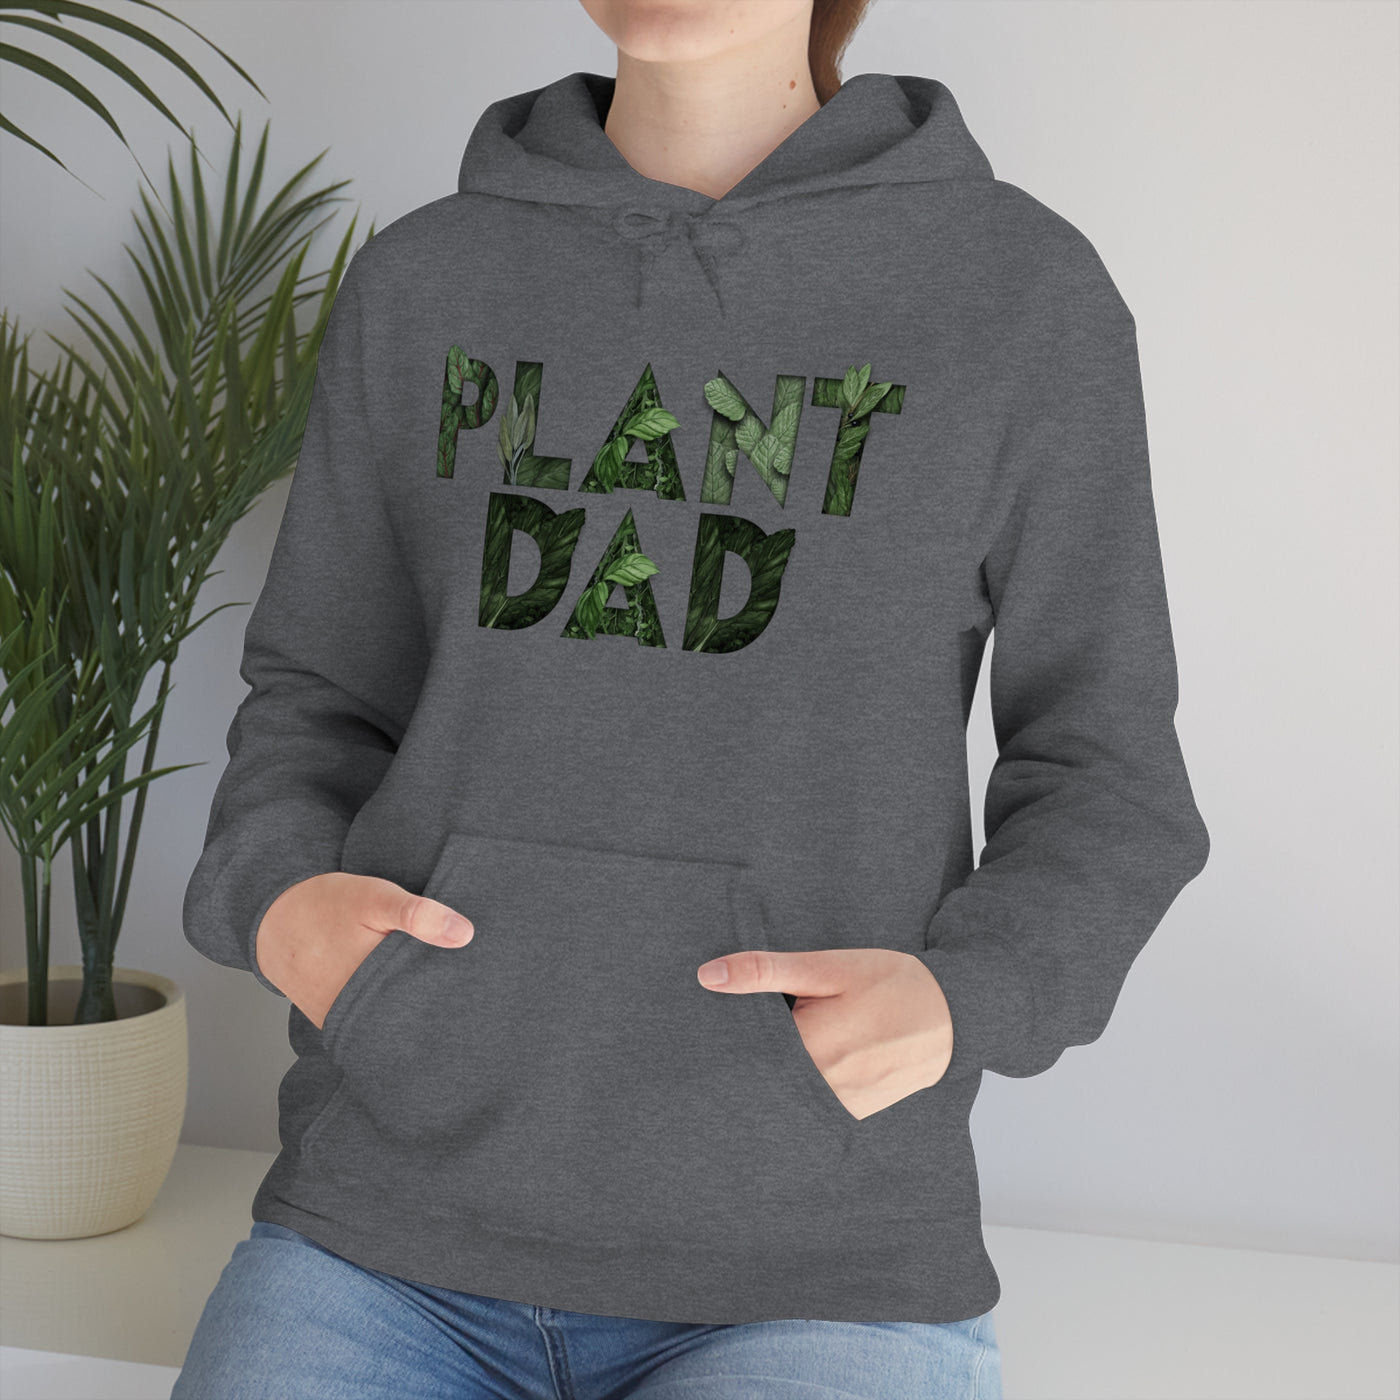 Plant Dad Unisex Hoodie